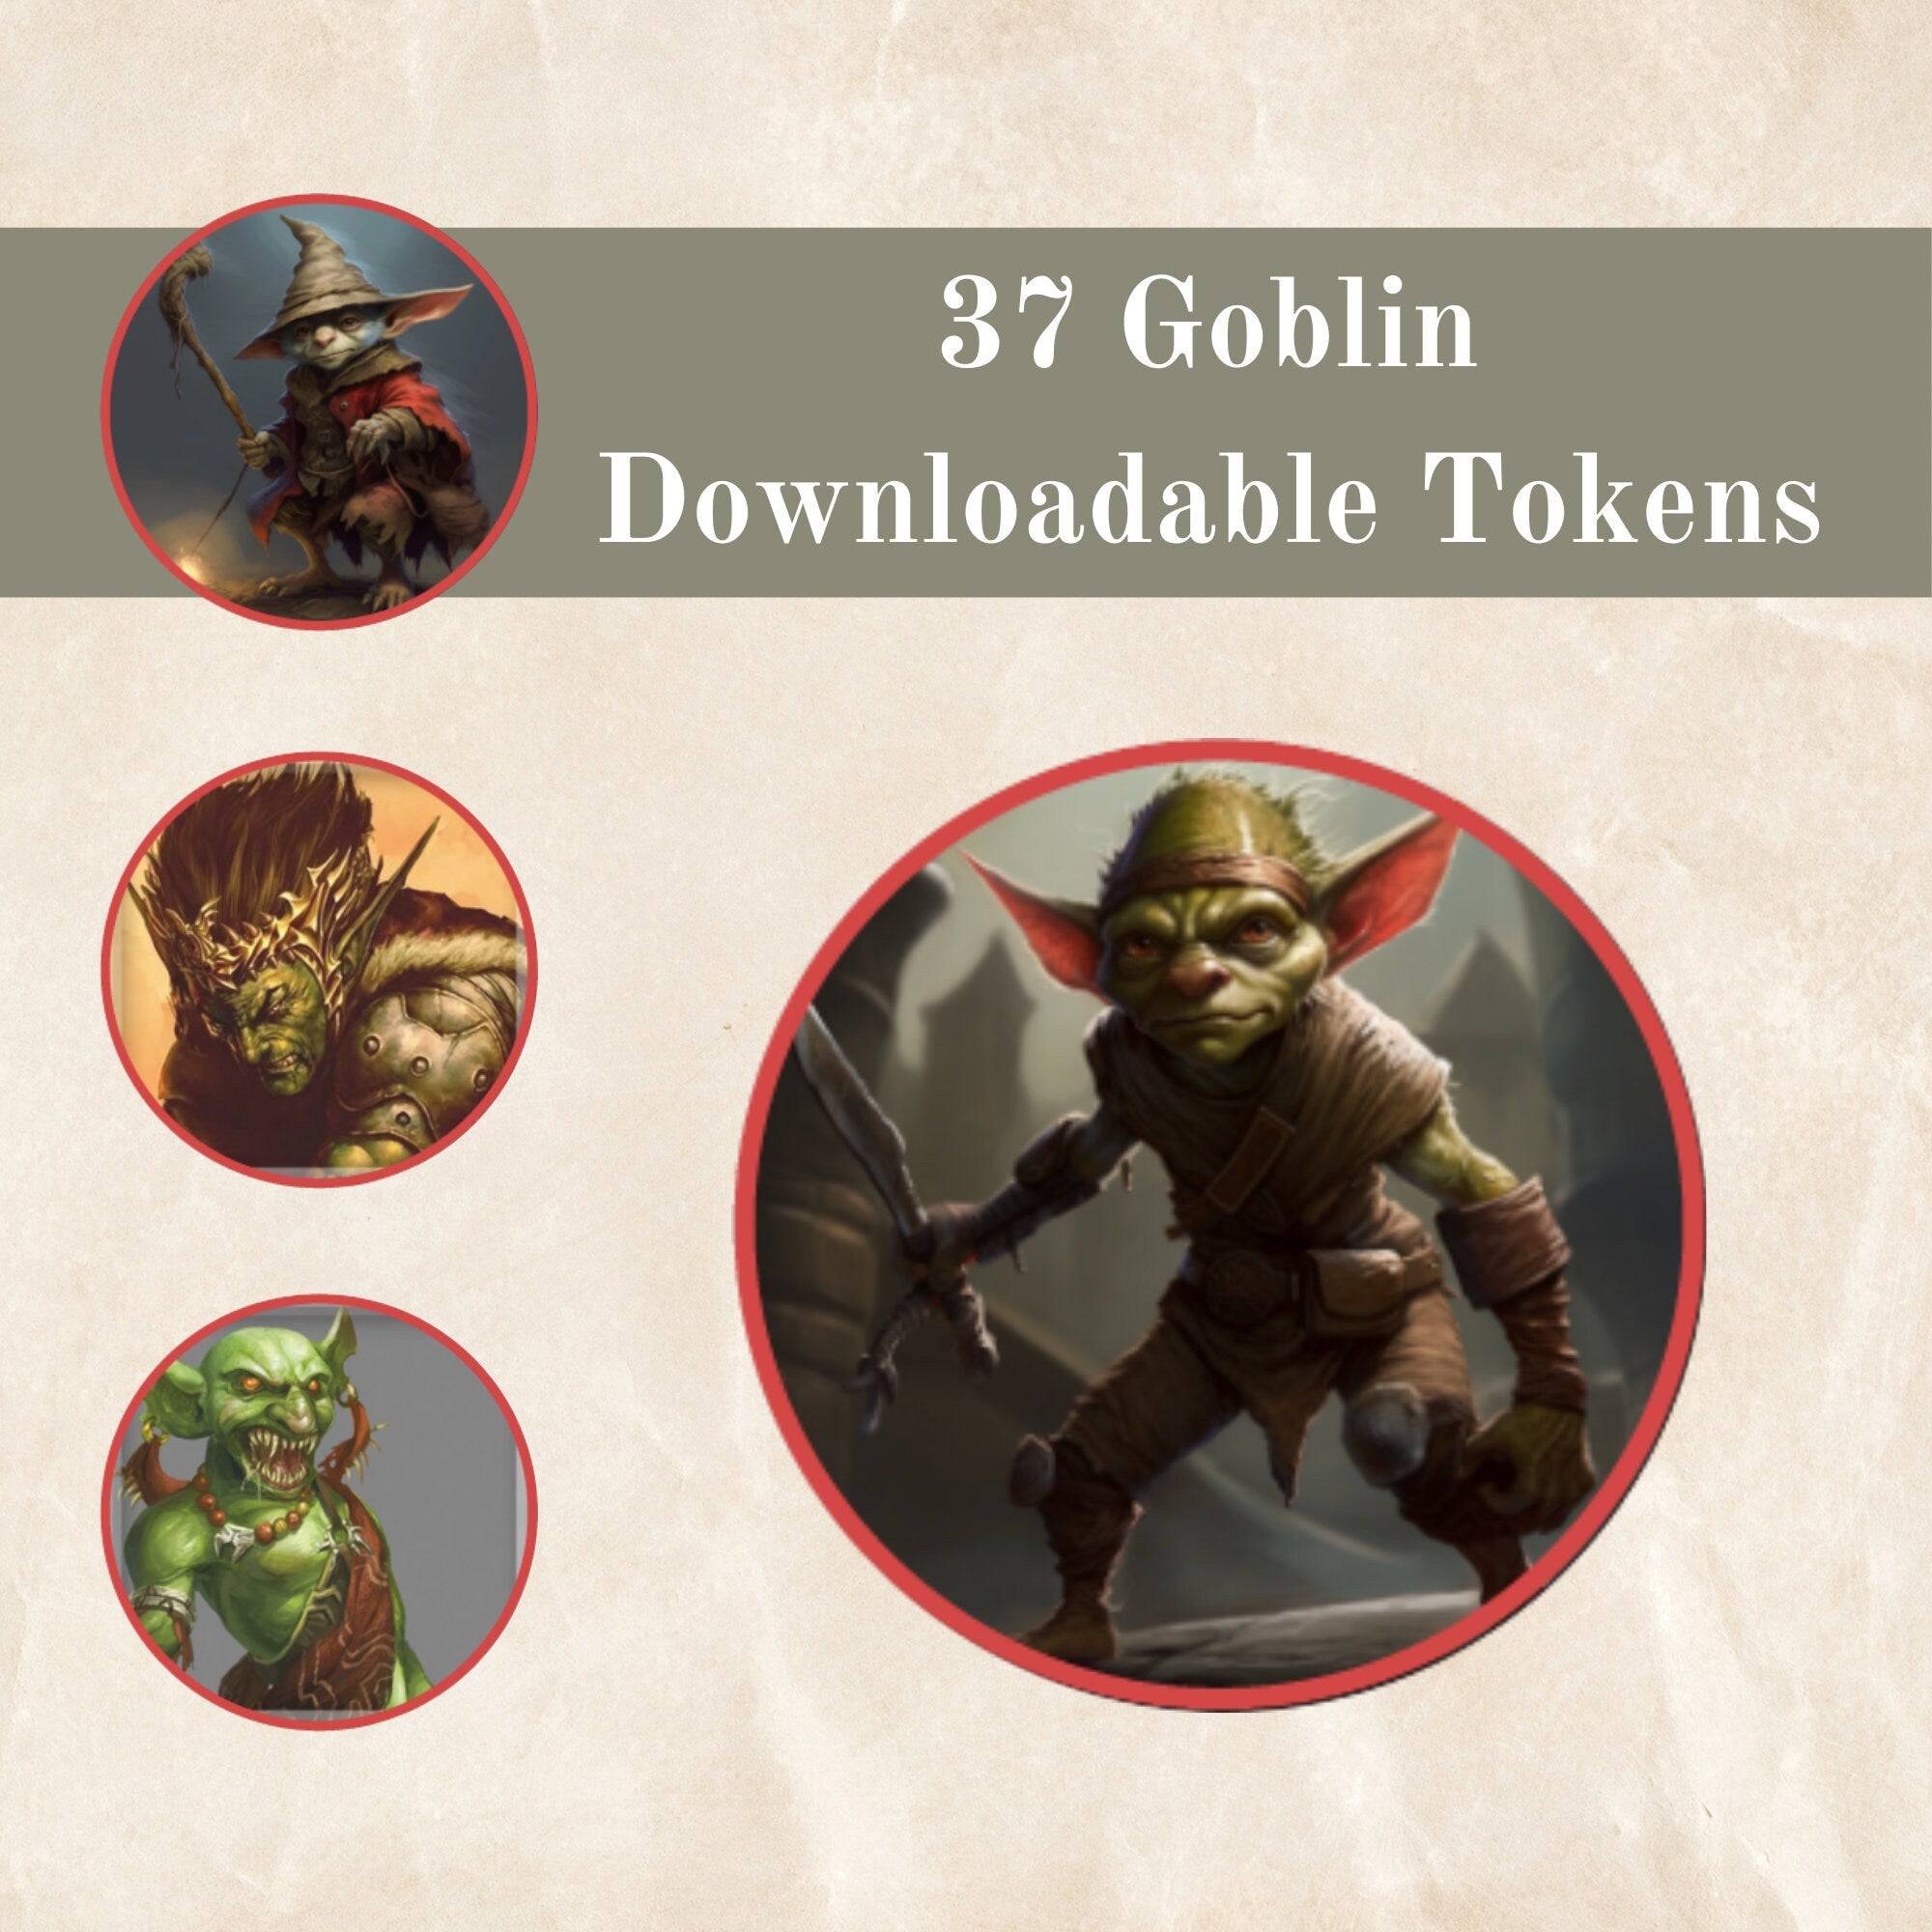 37 DnD Goblin Token - Downloadable - Mystery Dice Goblin